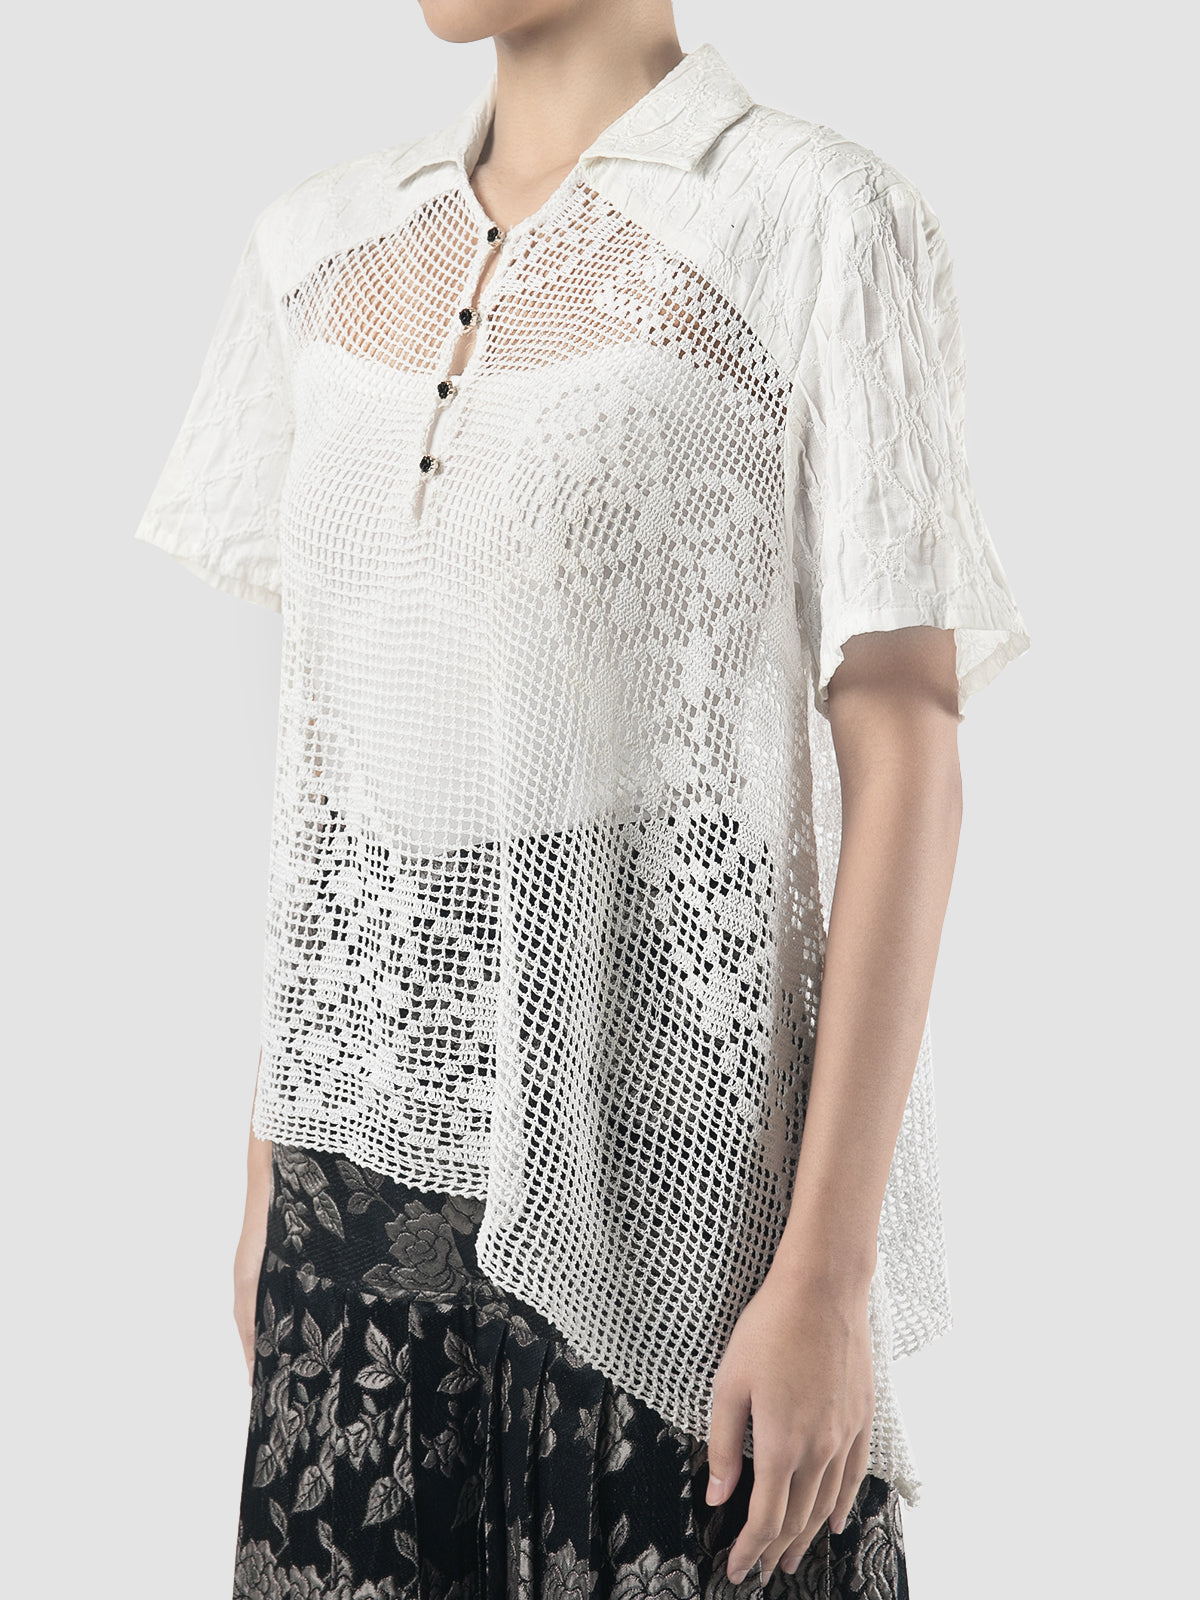 Diagonal white translucent polo shirt